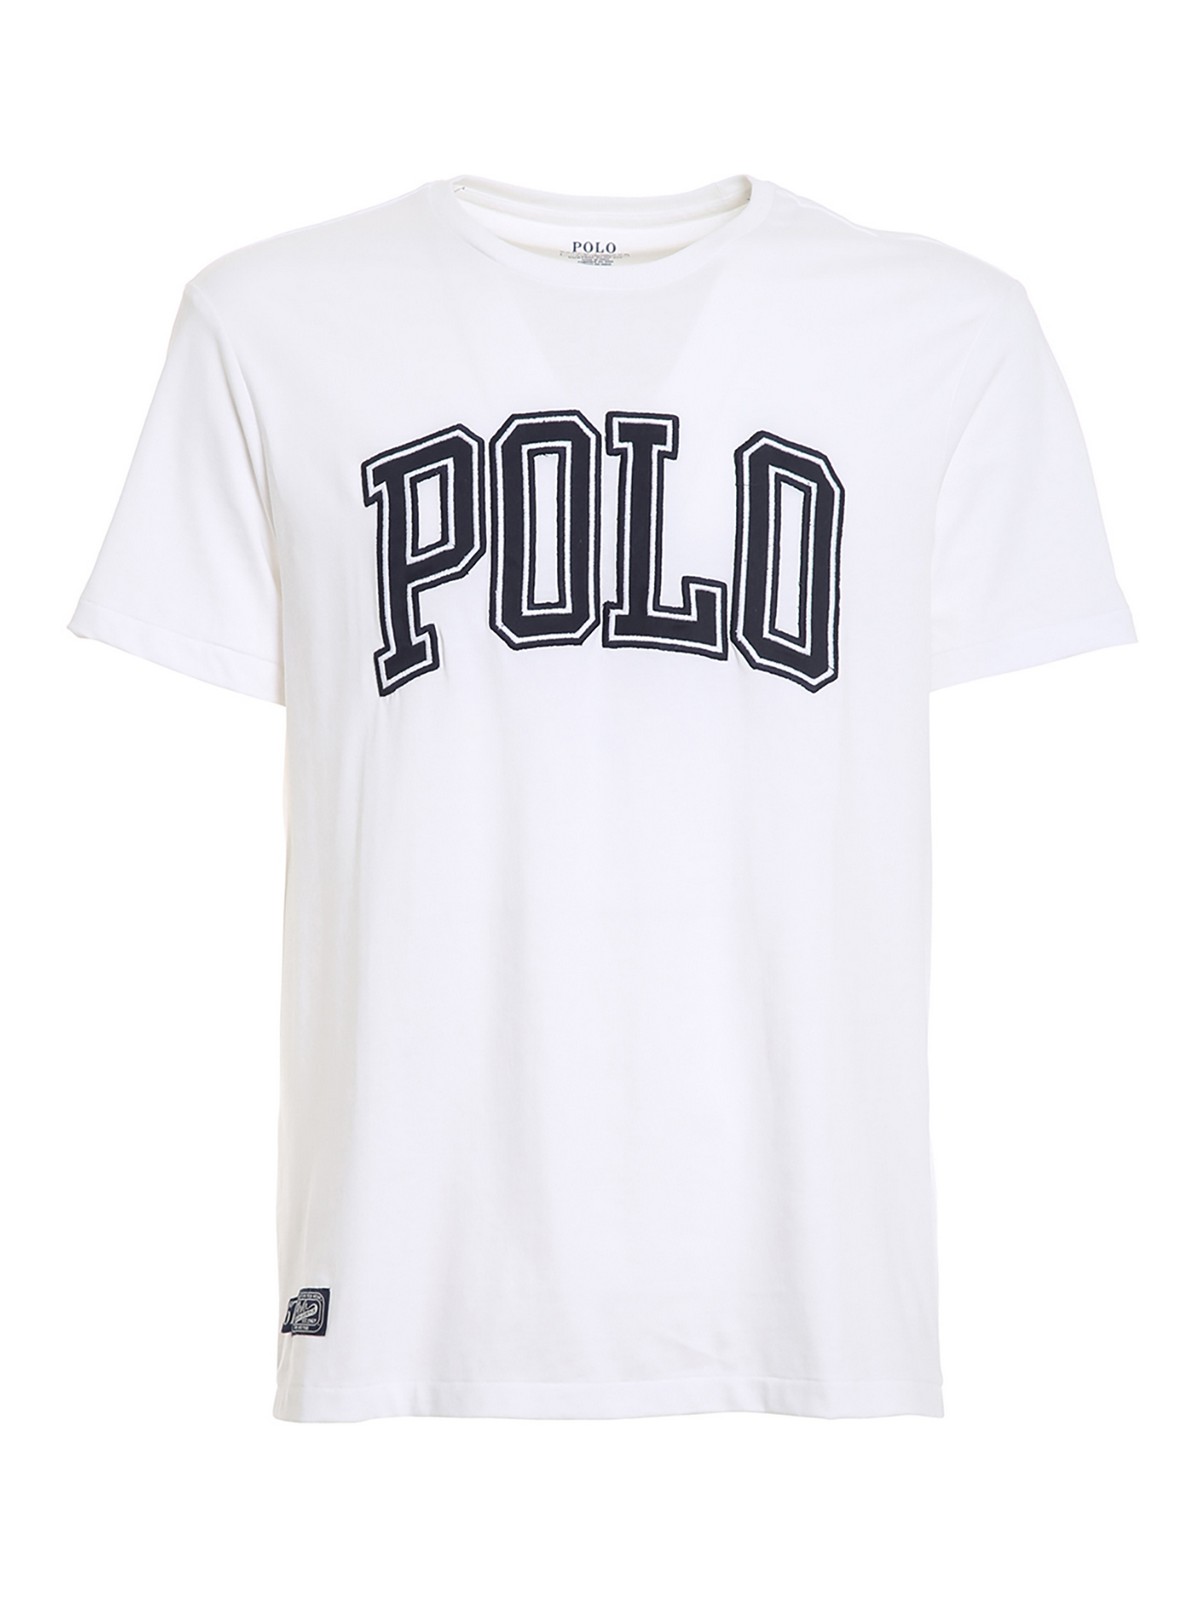 klok Koreaans Handschrift T-shirts Polo Ralph Lauren - Polo college embroidery T-shirt - 710840424002